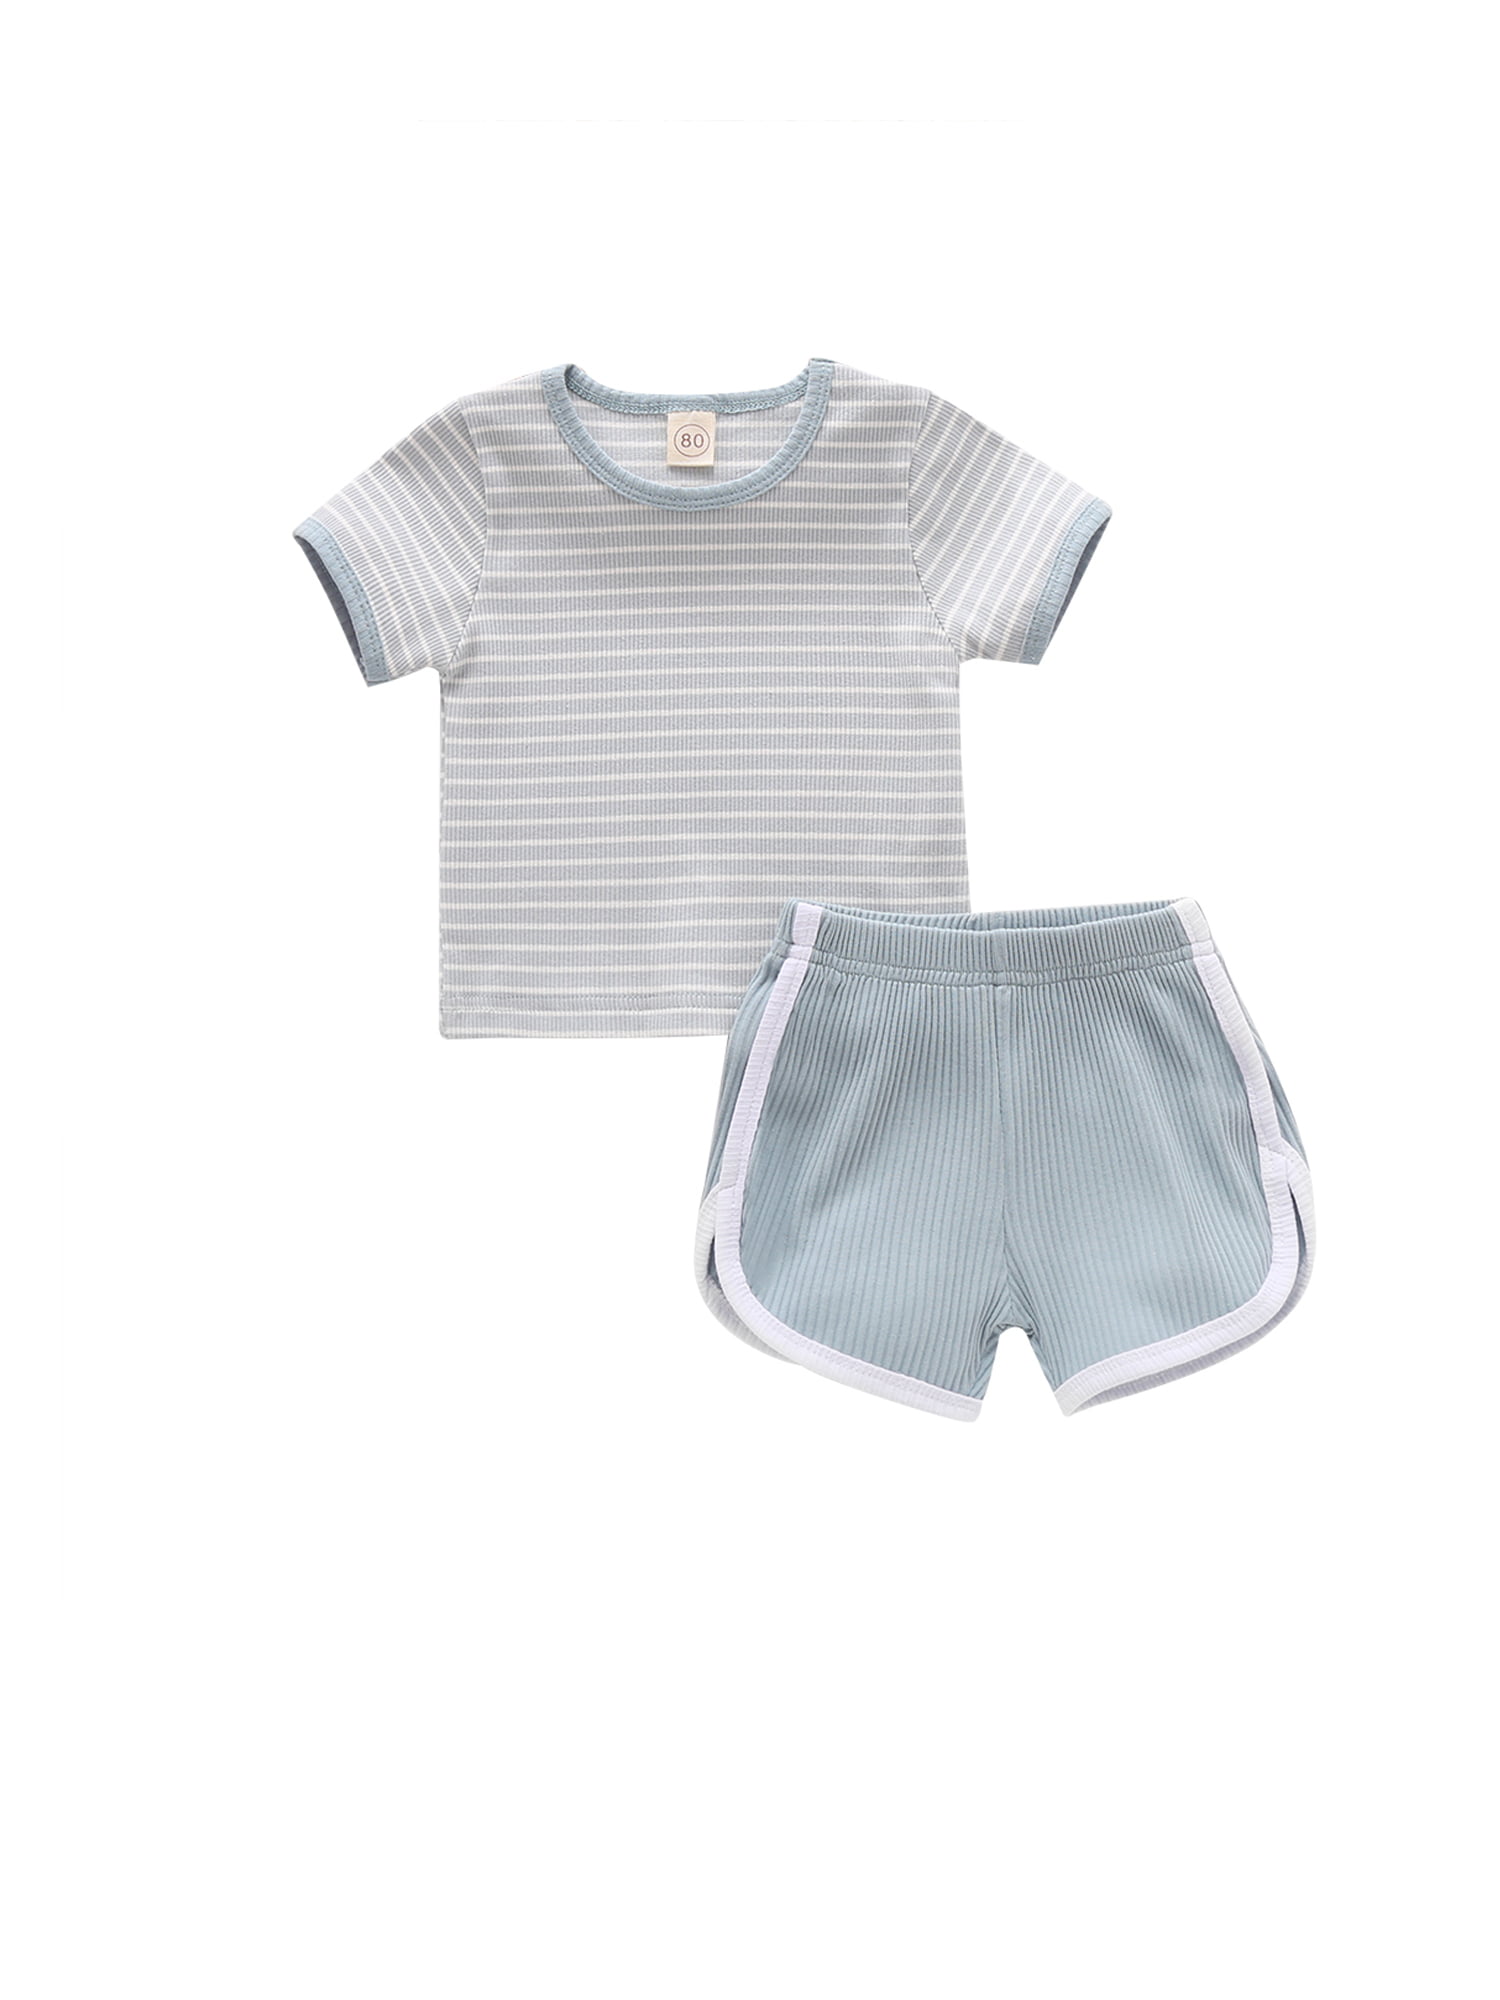 Toddler Baby Girl Boy Ribbed Pajamas Set Knit Stripe Short Sleeve Shirts Top+Shorts Pants 2Pcs Summer Outfit 